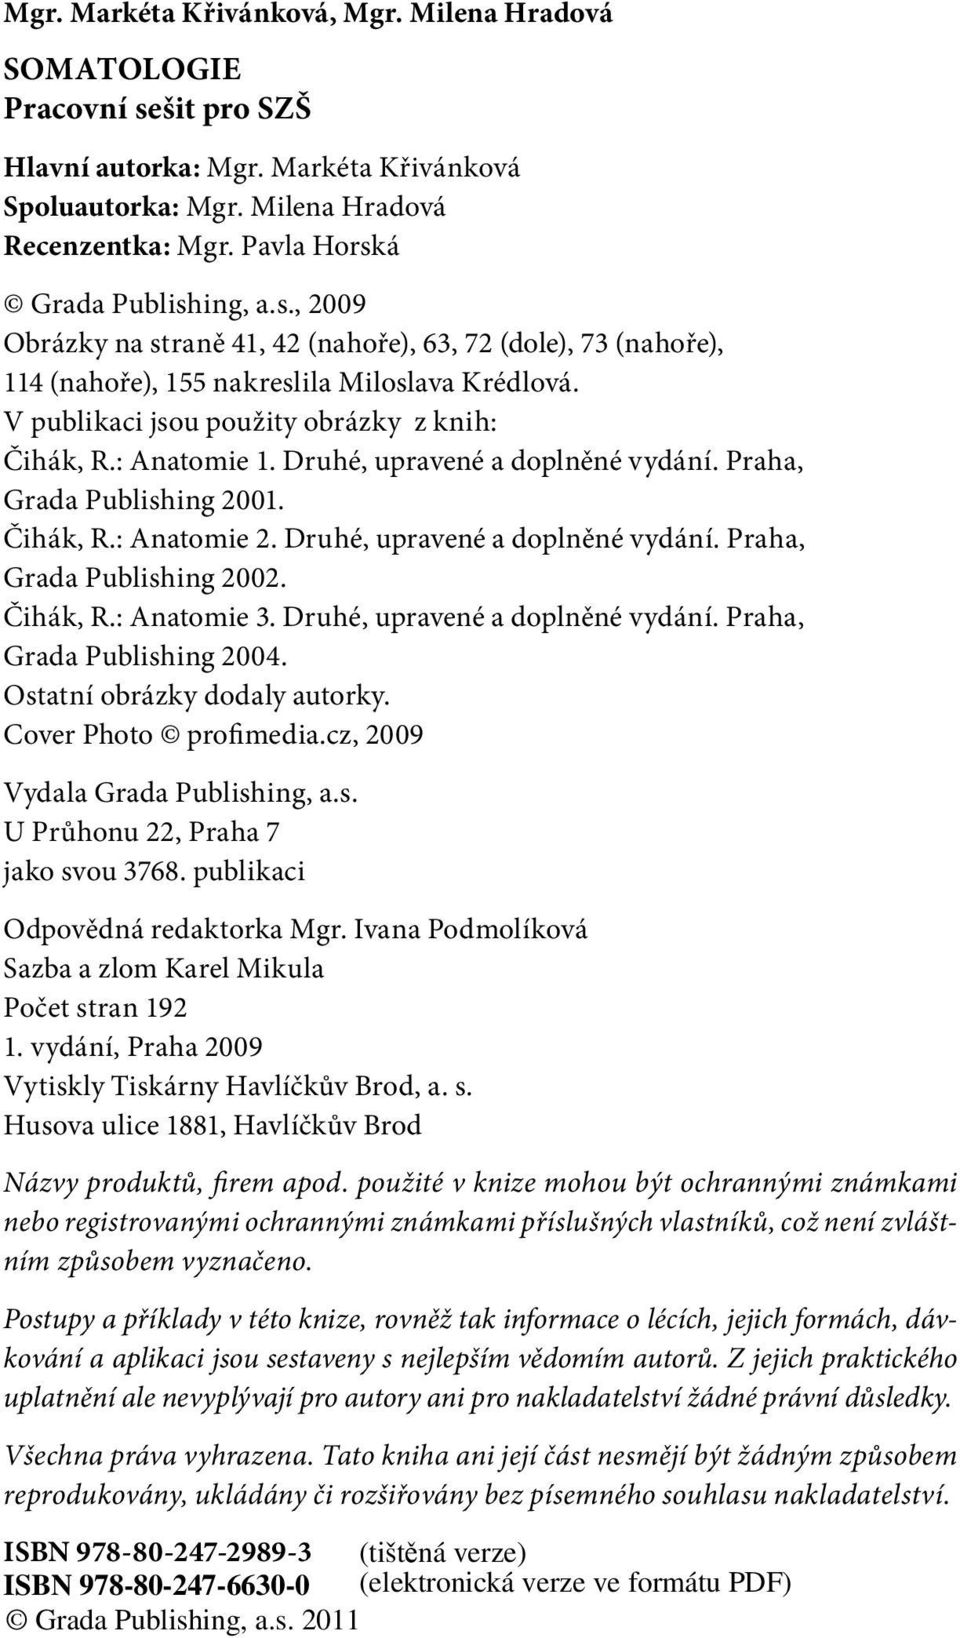 V publikaci jsou použity obrázky z knih: Čihák, R.: Anatomie 1. Druhé, upravené a doplněné vydání. Praha, Grada Publishing 2001. Čihák, R.: Anatomie 2. Druhé, upravené a doplněné vydání. Praha, Grada Publishing 2002.